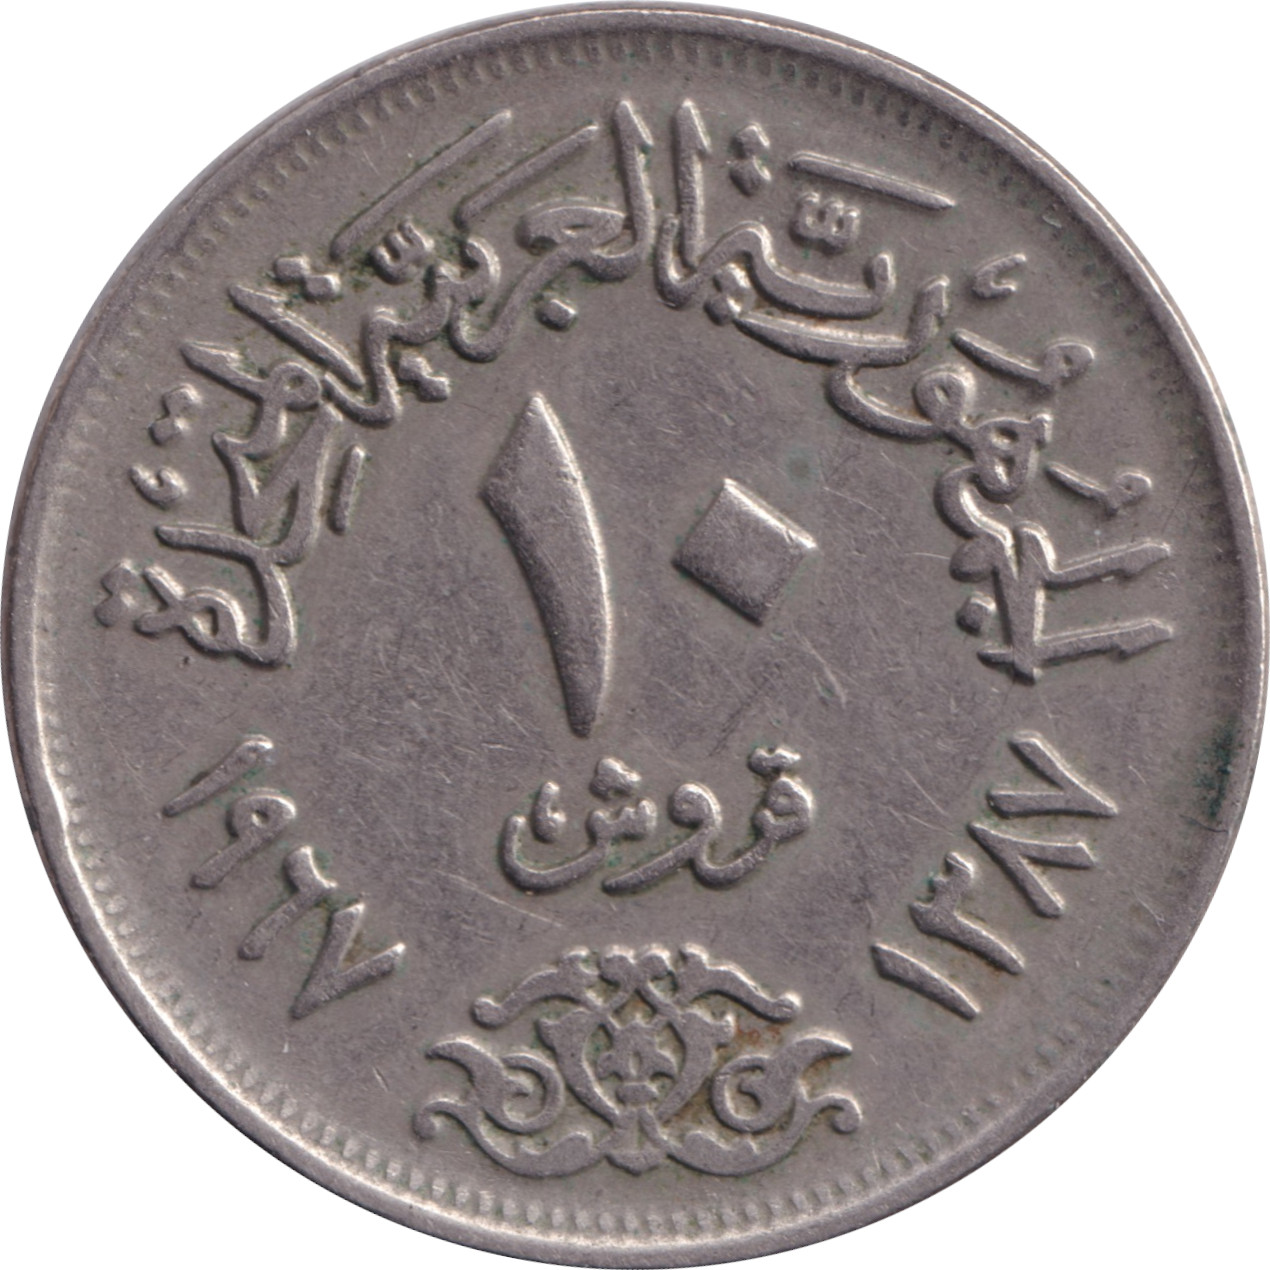 10 piastres - République Arabe Unie - Type 2